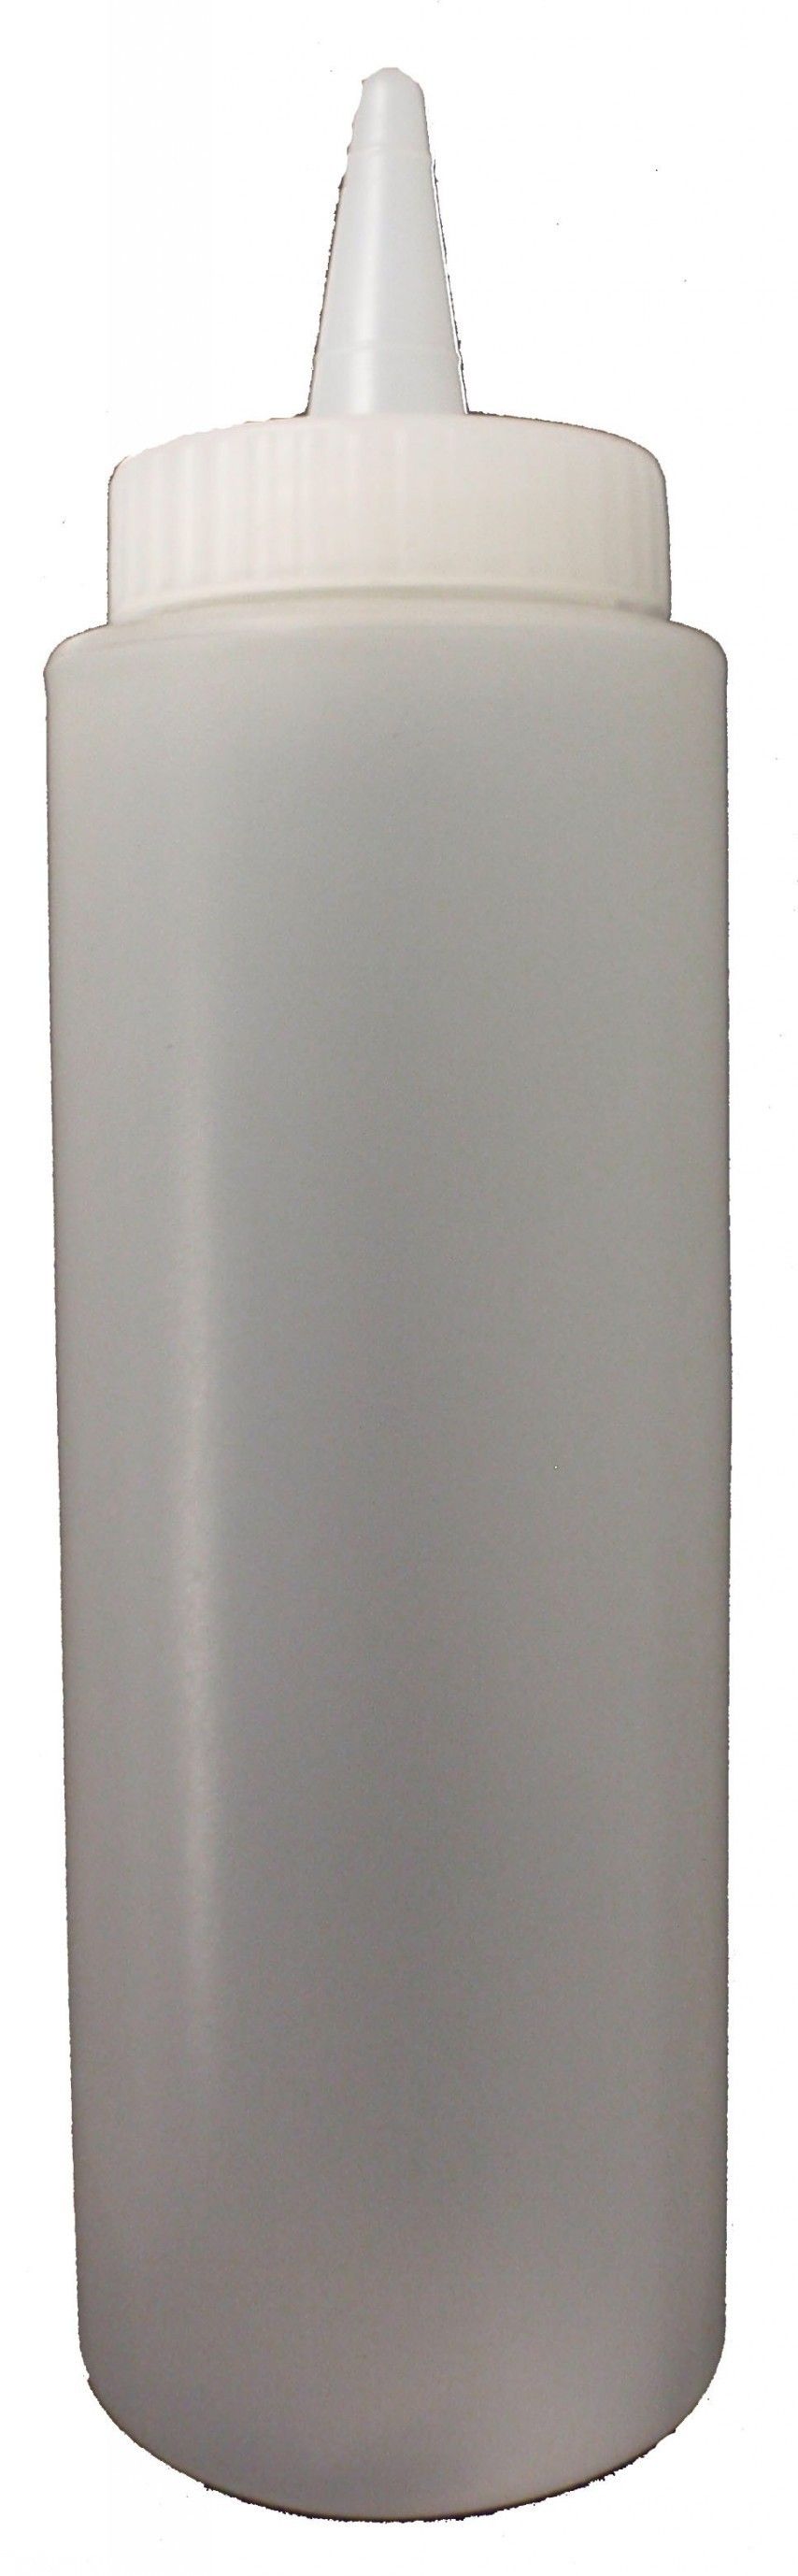 Контейнер пластиковый для соуса 300мл (белый) PSB-12C от СП Контакт